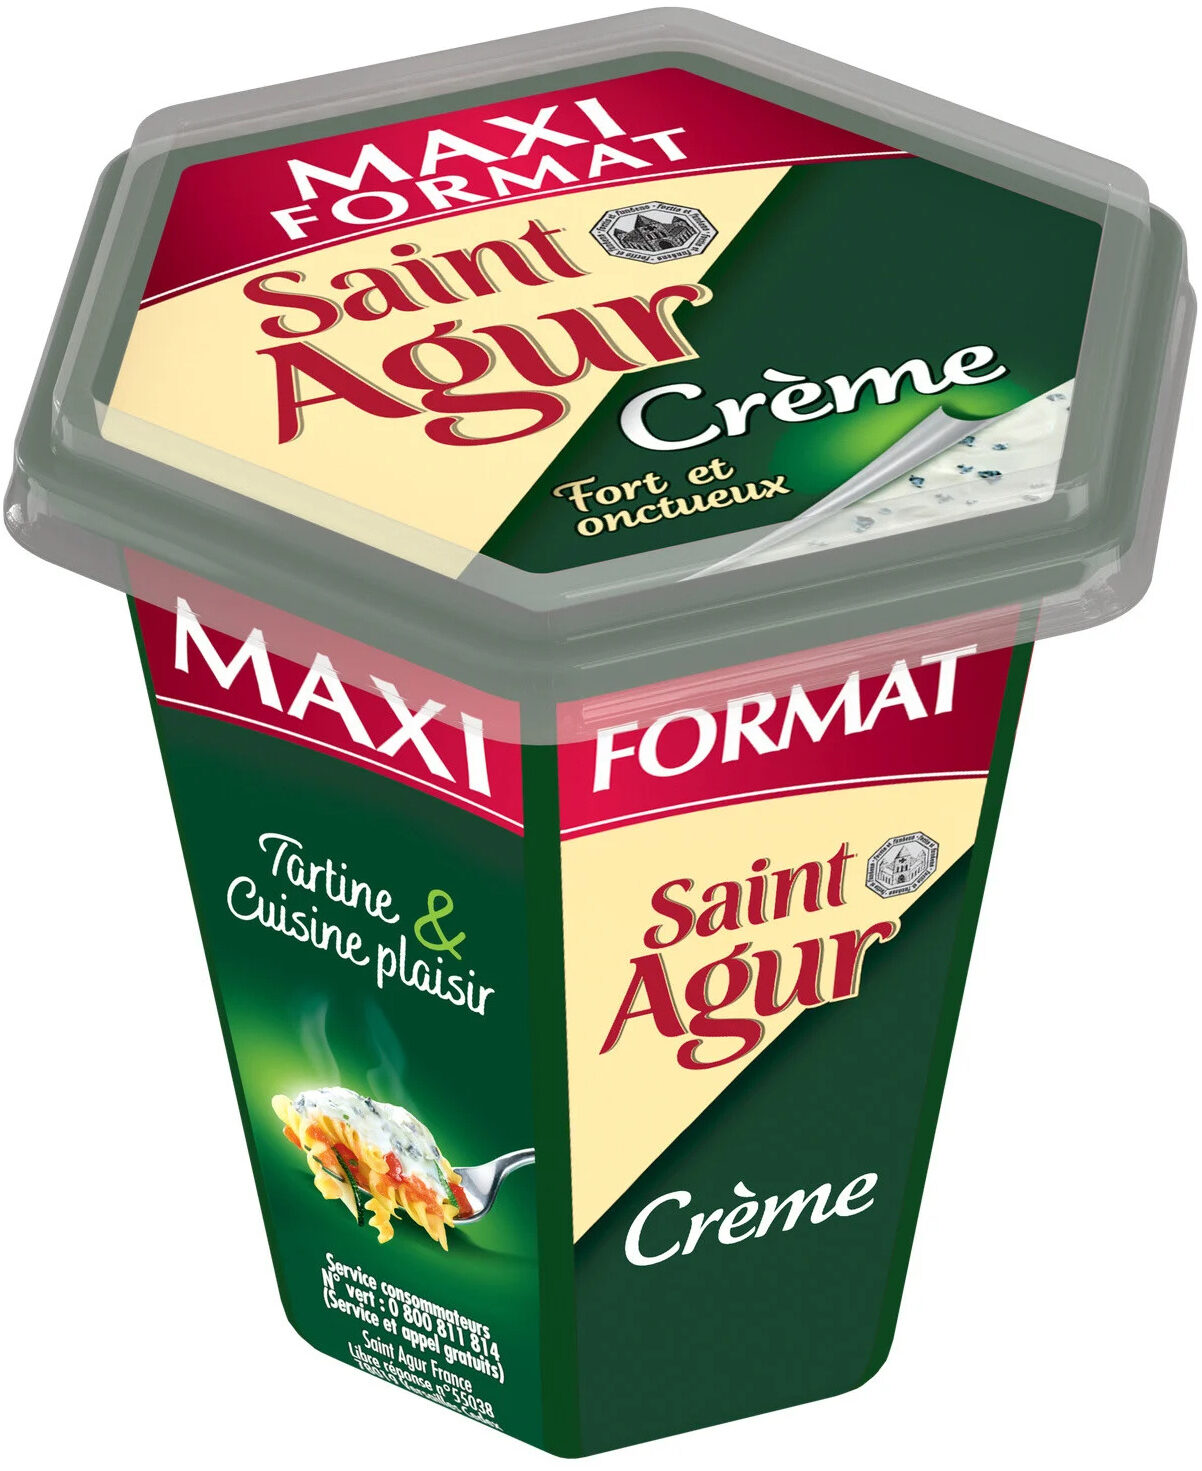 Crème Tartine & Cuisine plaisir - Produit